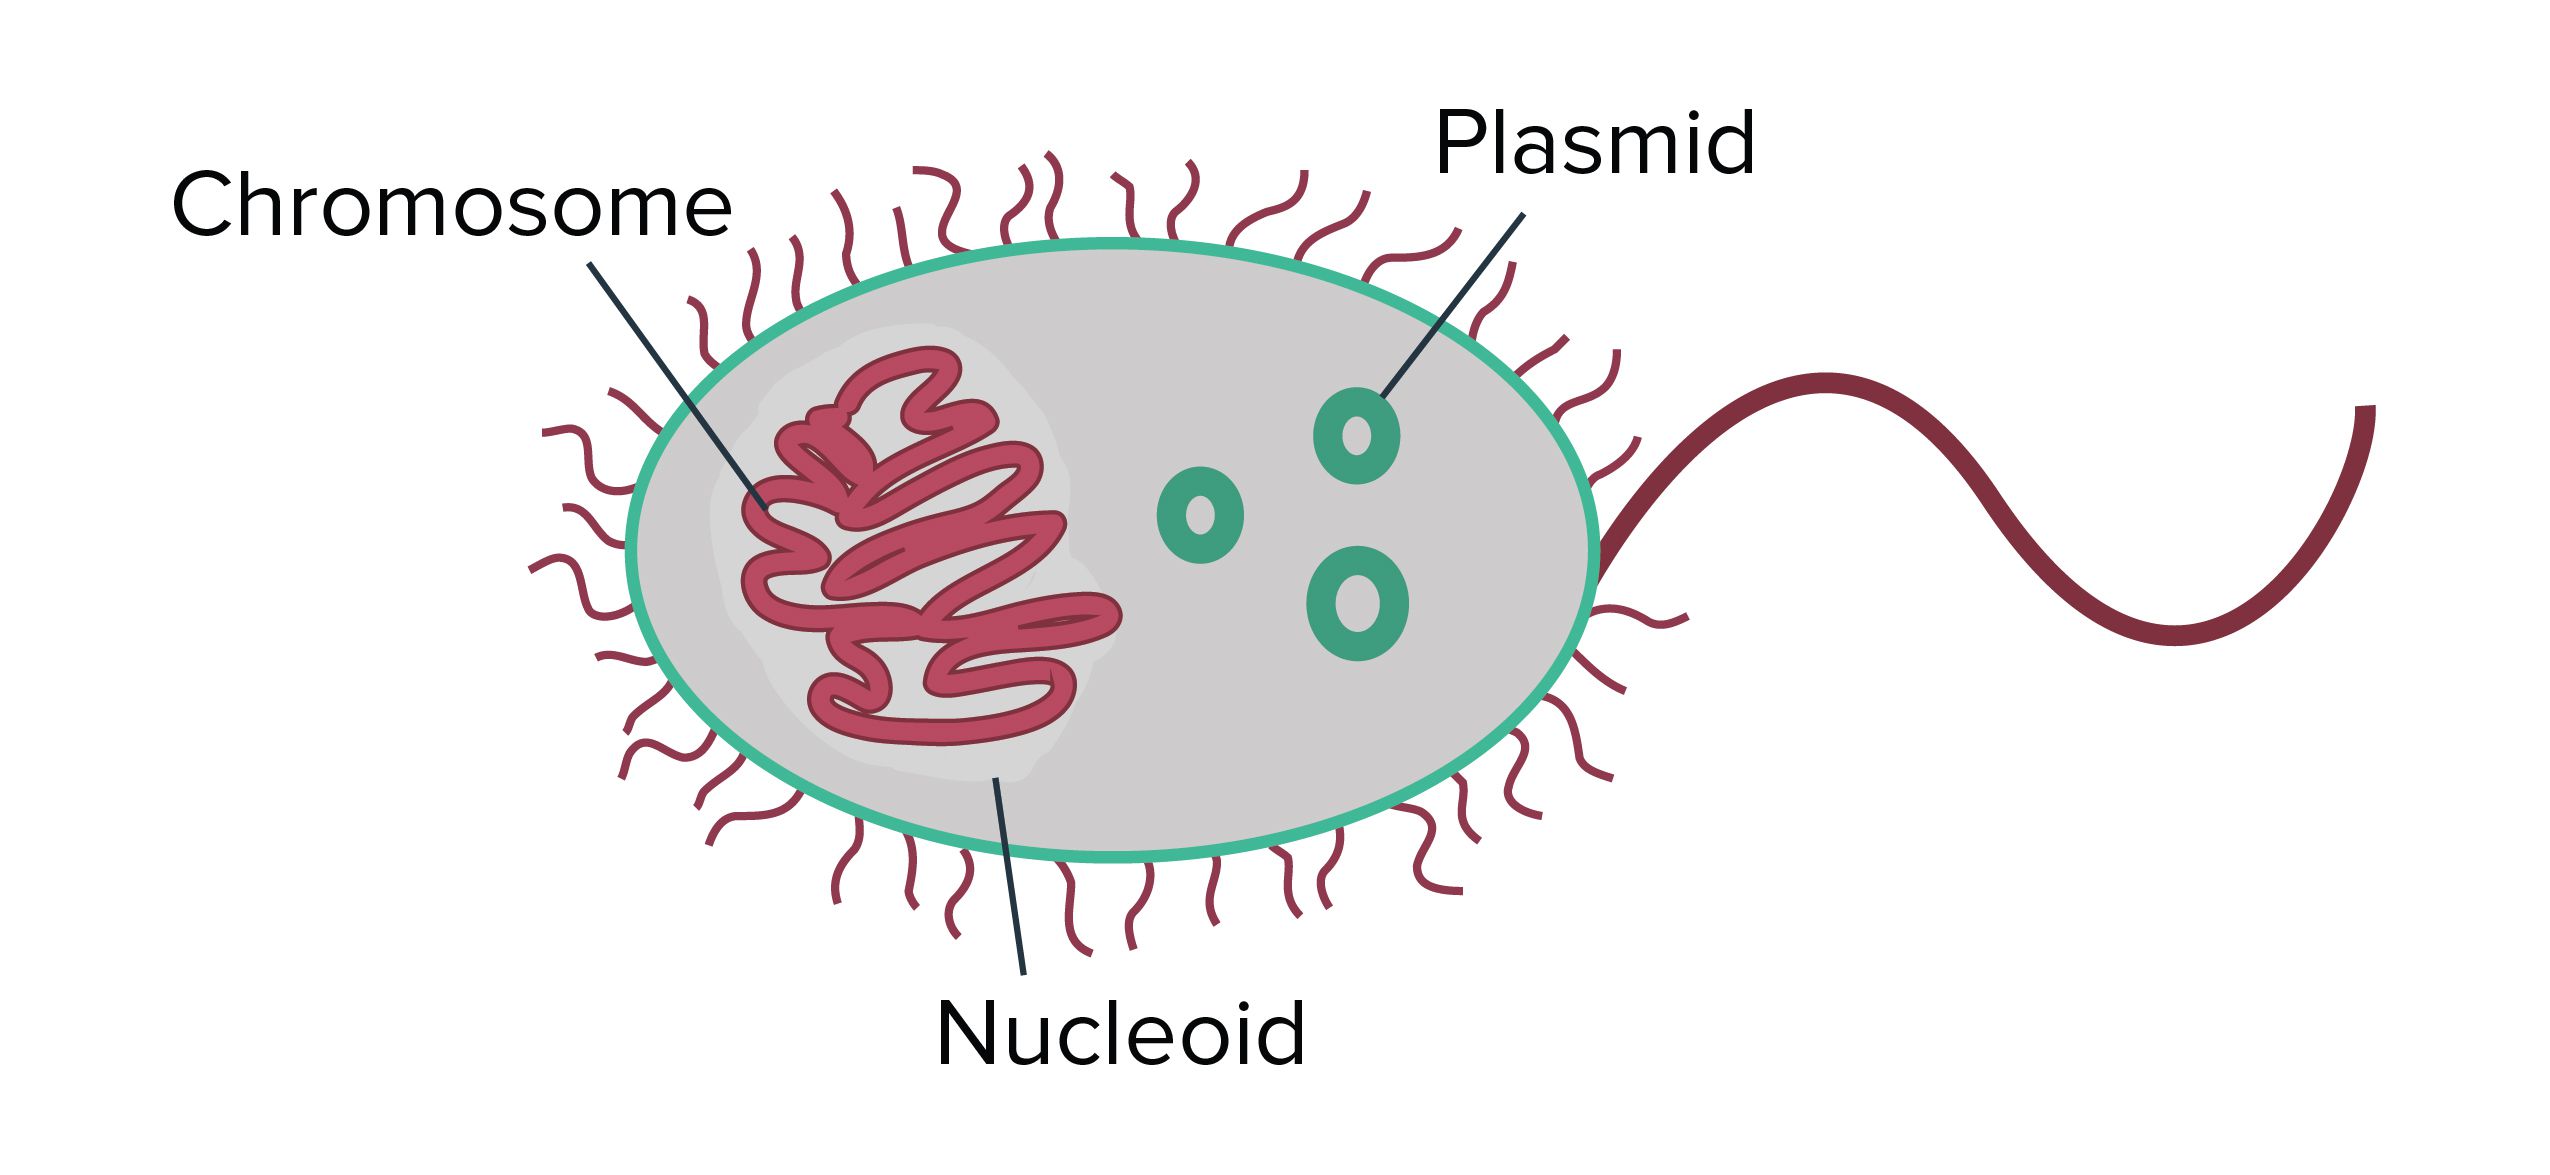 Nucleoid